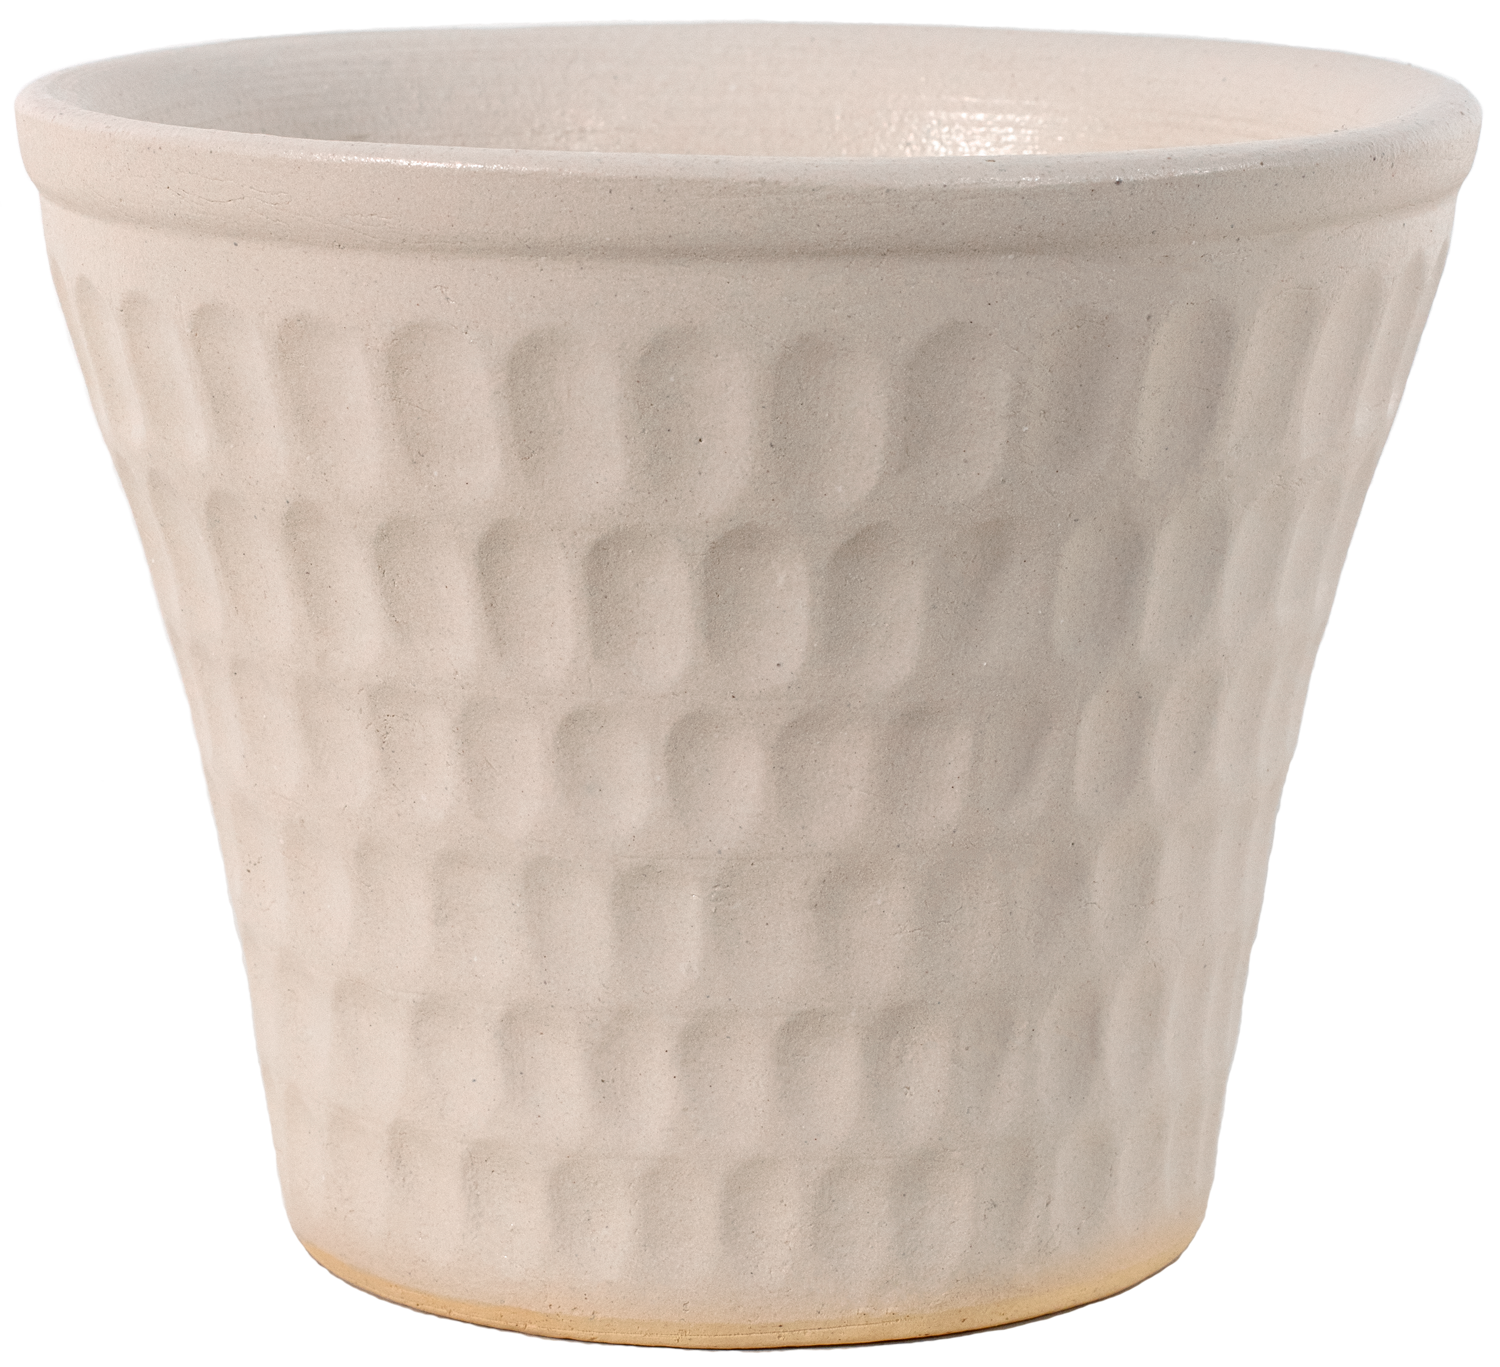 medium white ceramic planter with oval design